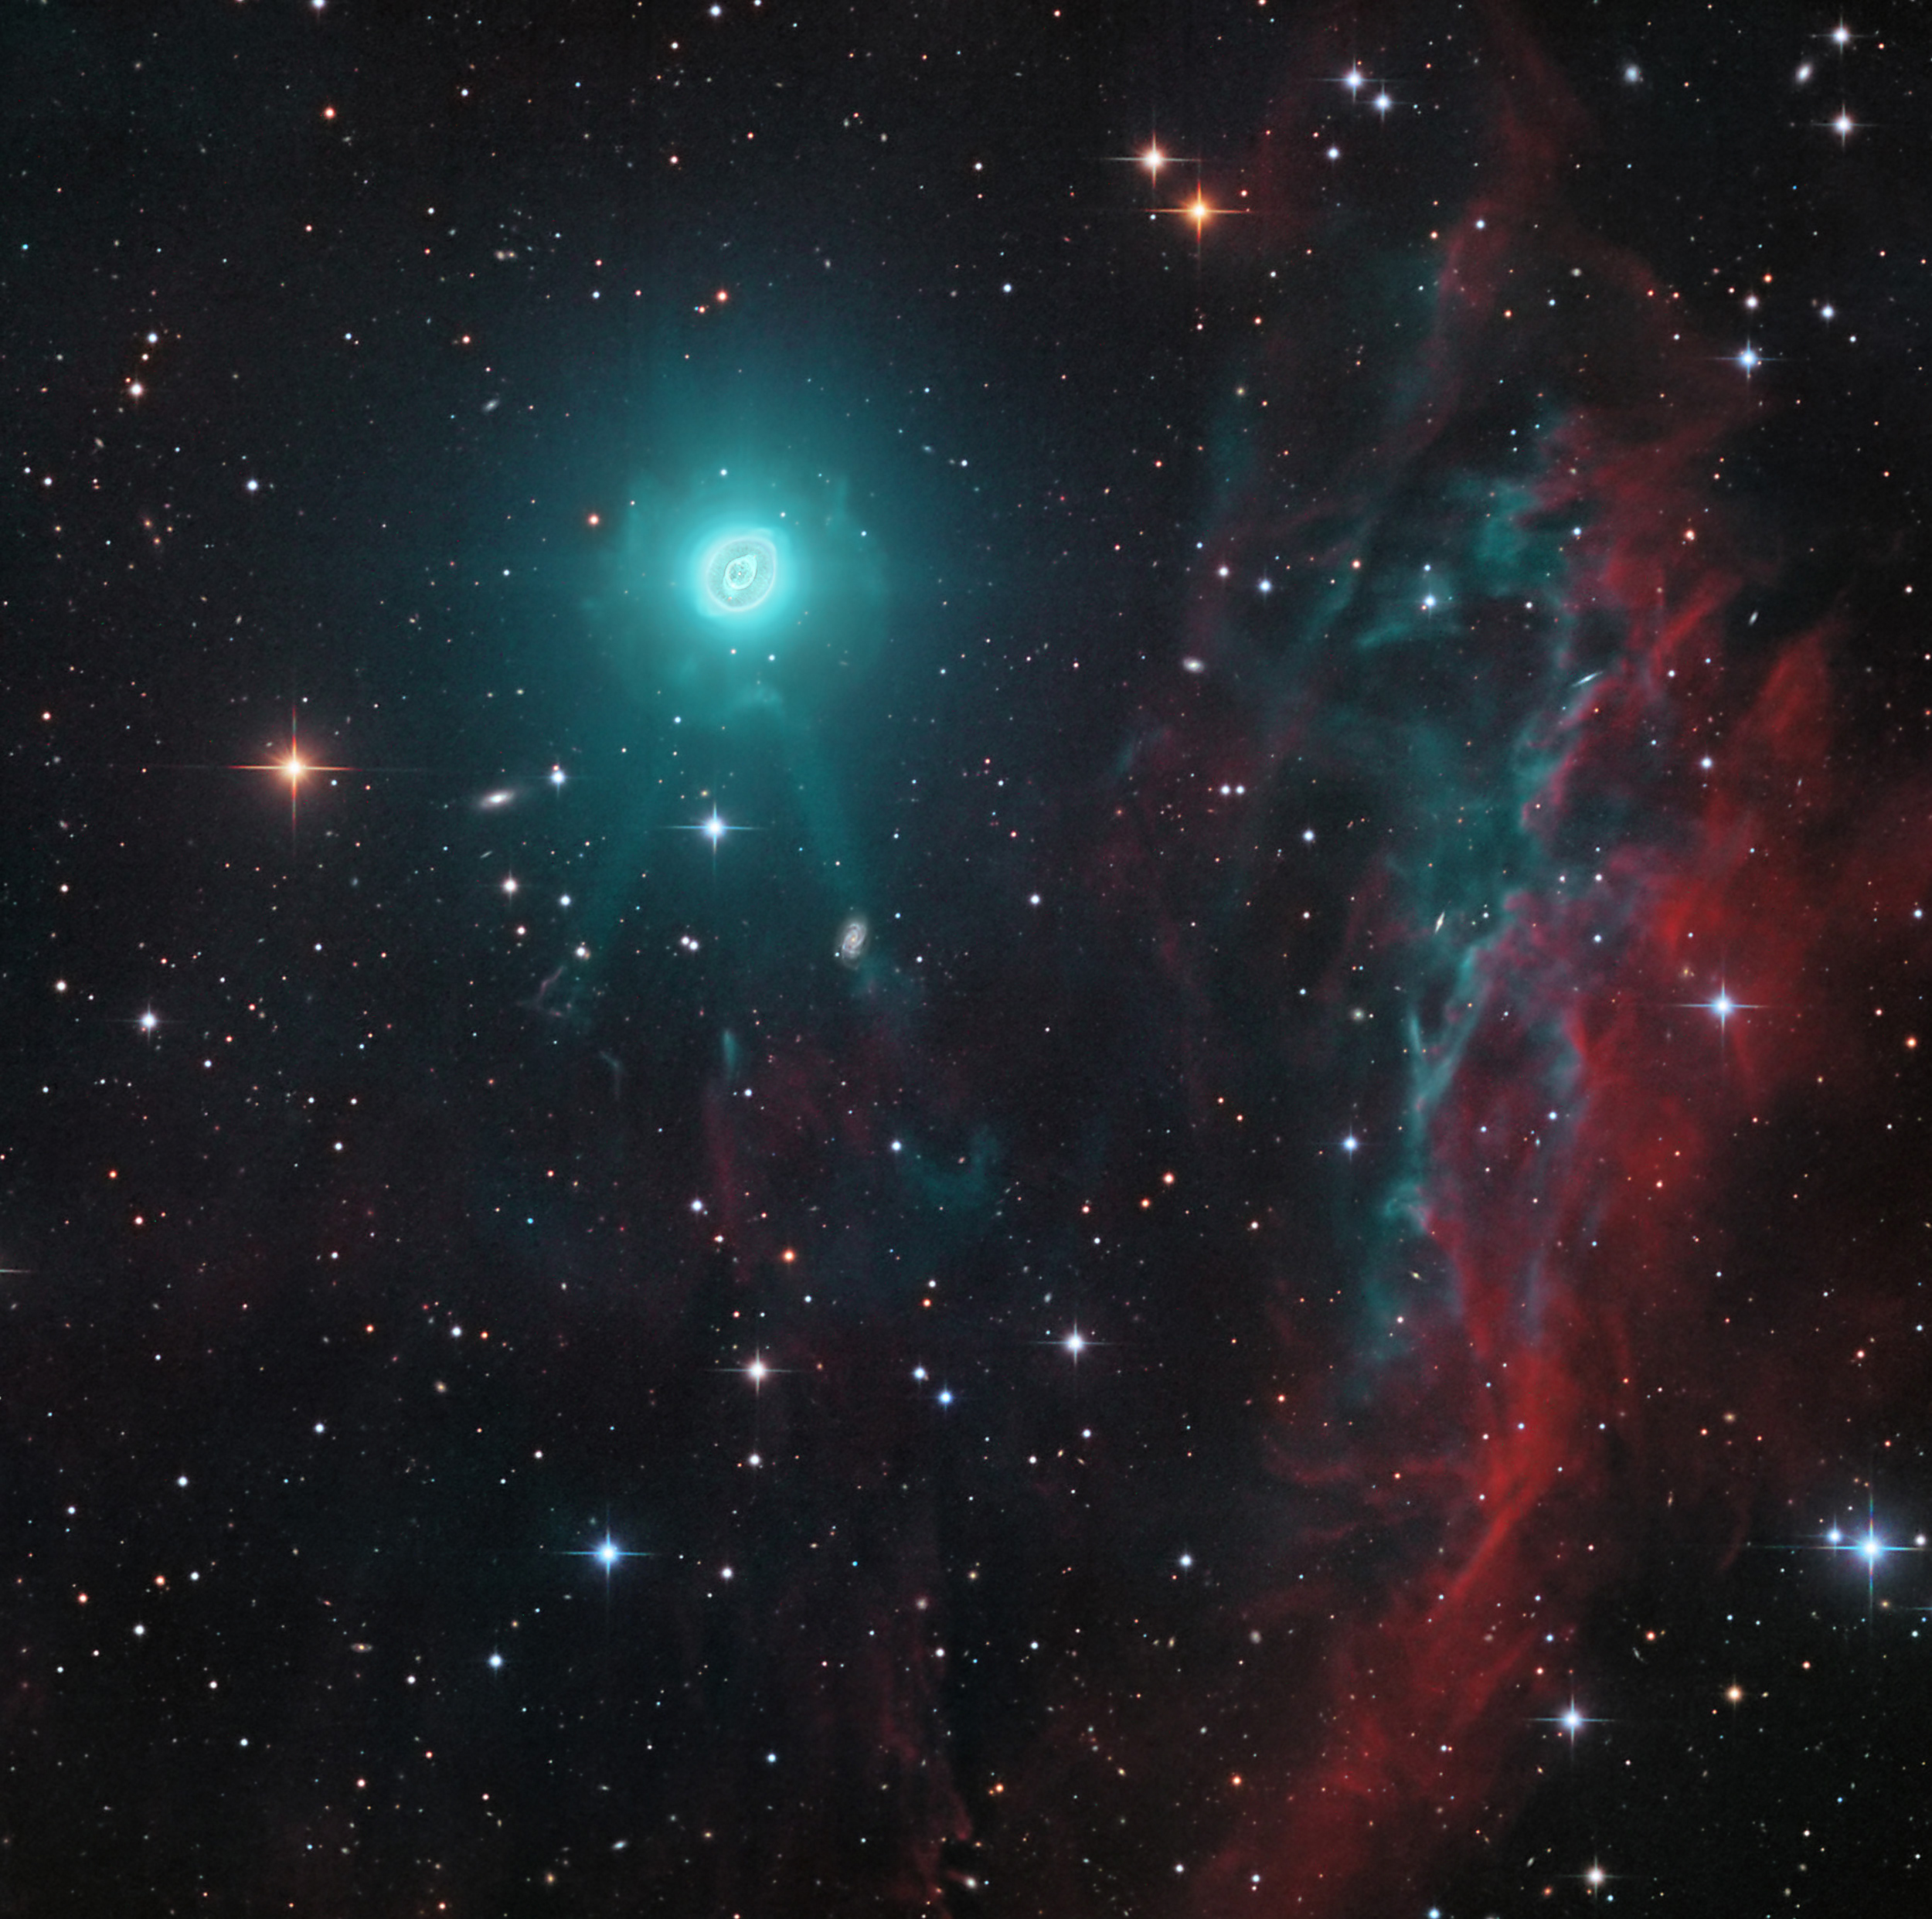  2019年8月2日<br />木魂星雲的外暈 <br />影像提供與版權: CHART32 Team, 影像處理: Johannes Schedler / Volker Wendel <br />說明: NGC 3242的特寫影像證實，它是個由垂死類太陽恆星拋出的外層氣殼，擁有木魂星雲的花俏名號。 而在這幅遠眺長蛇座方向的銀河繁星和背景星系的深空大視野望遠鏡影像裡，這團位在左上角的美麗行星狀星雲，帶著罕見的外暈。 來自星雲中心的白矮星，發出強烈但不可見的紫外輻射，激發星雲輻射出幻影般的可見光。 <br /> 